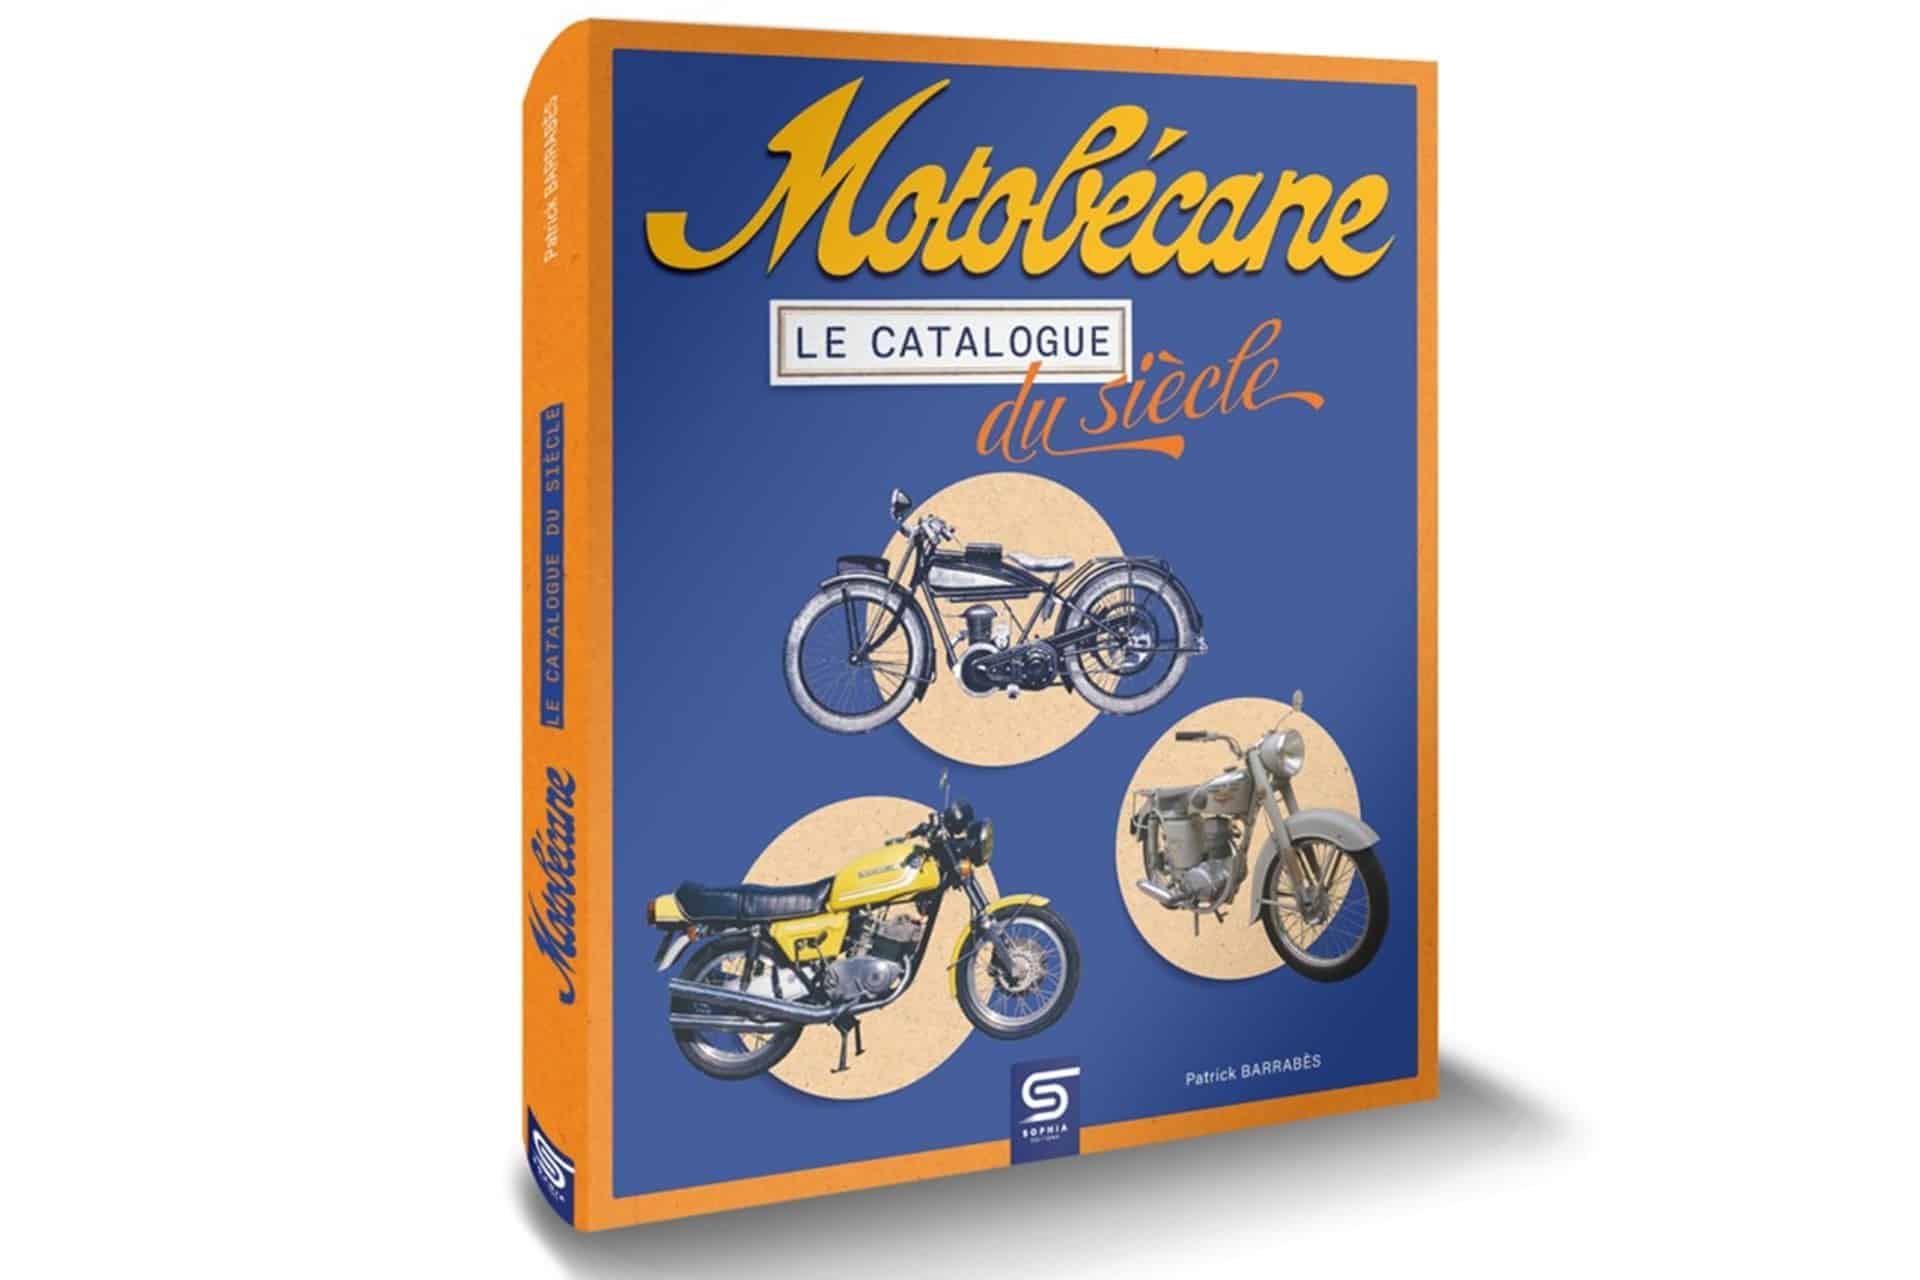 Motobécane, el catálogo del siglo: El libro definitivo sobre la historia de la marca francesa